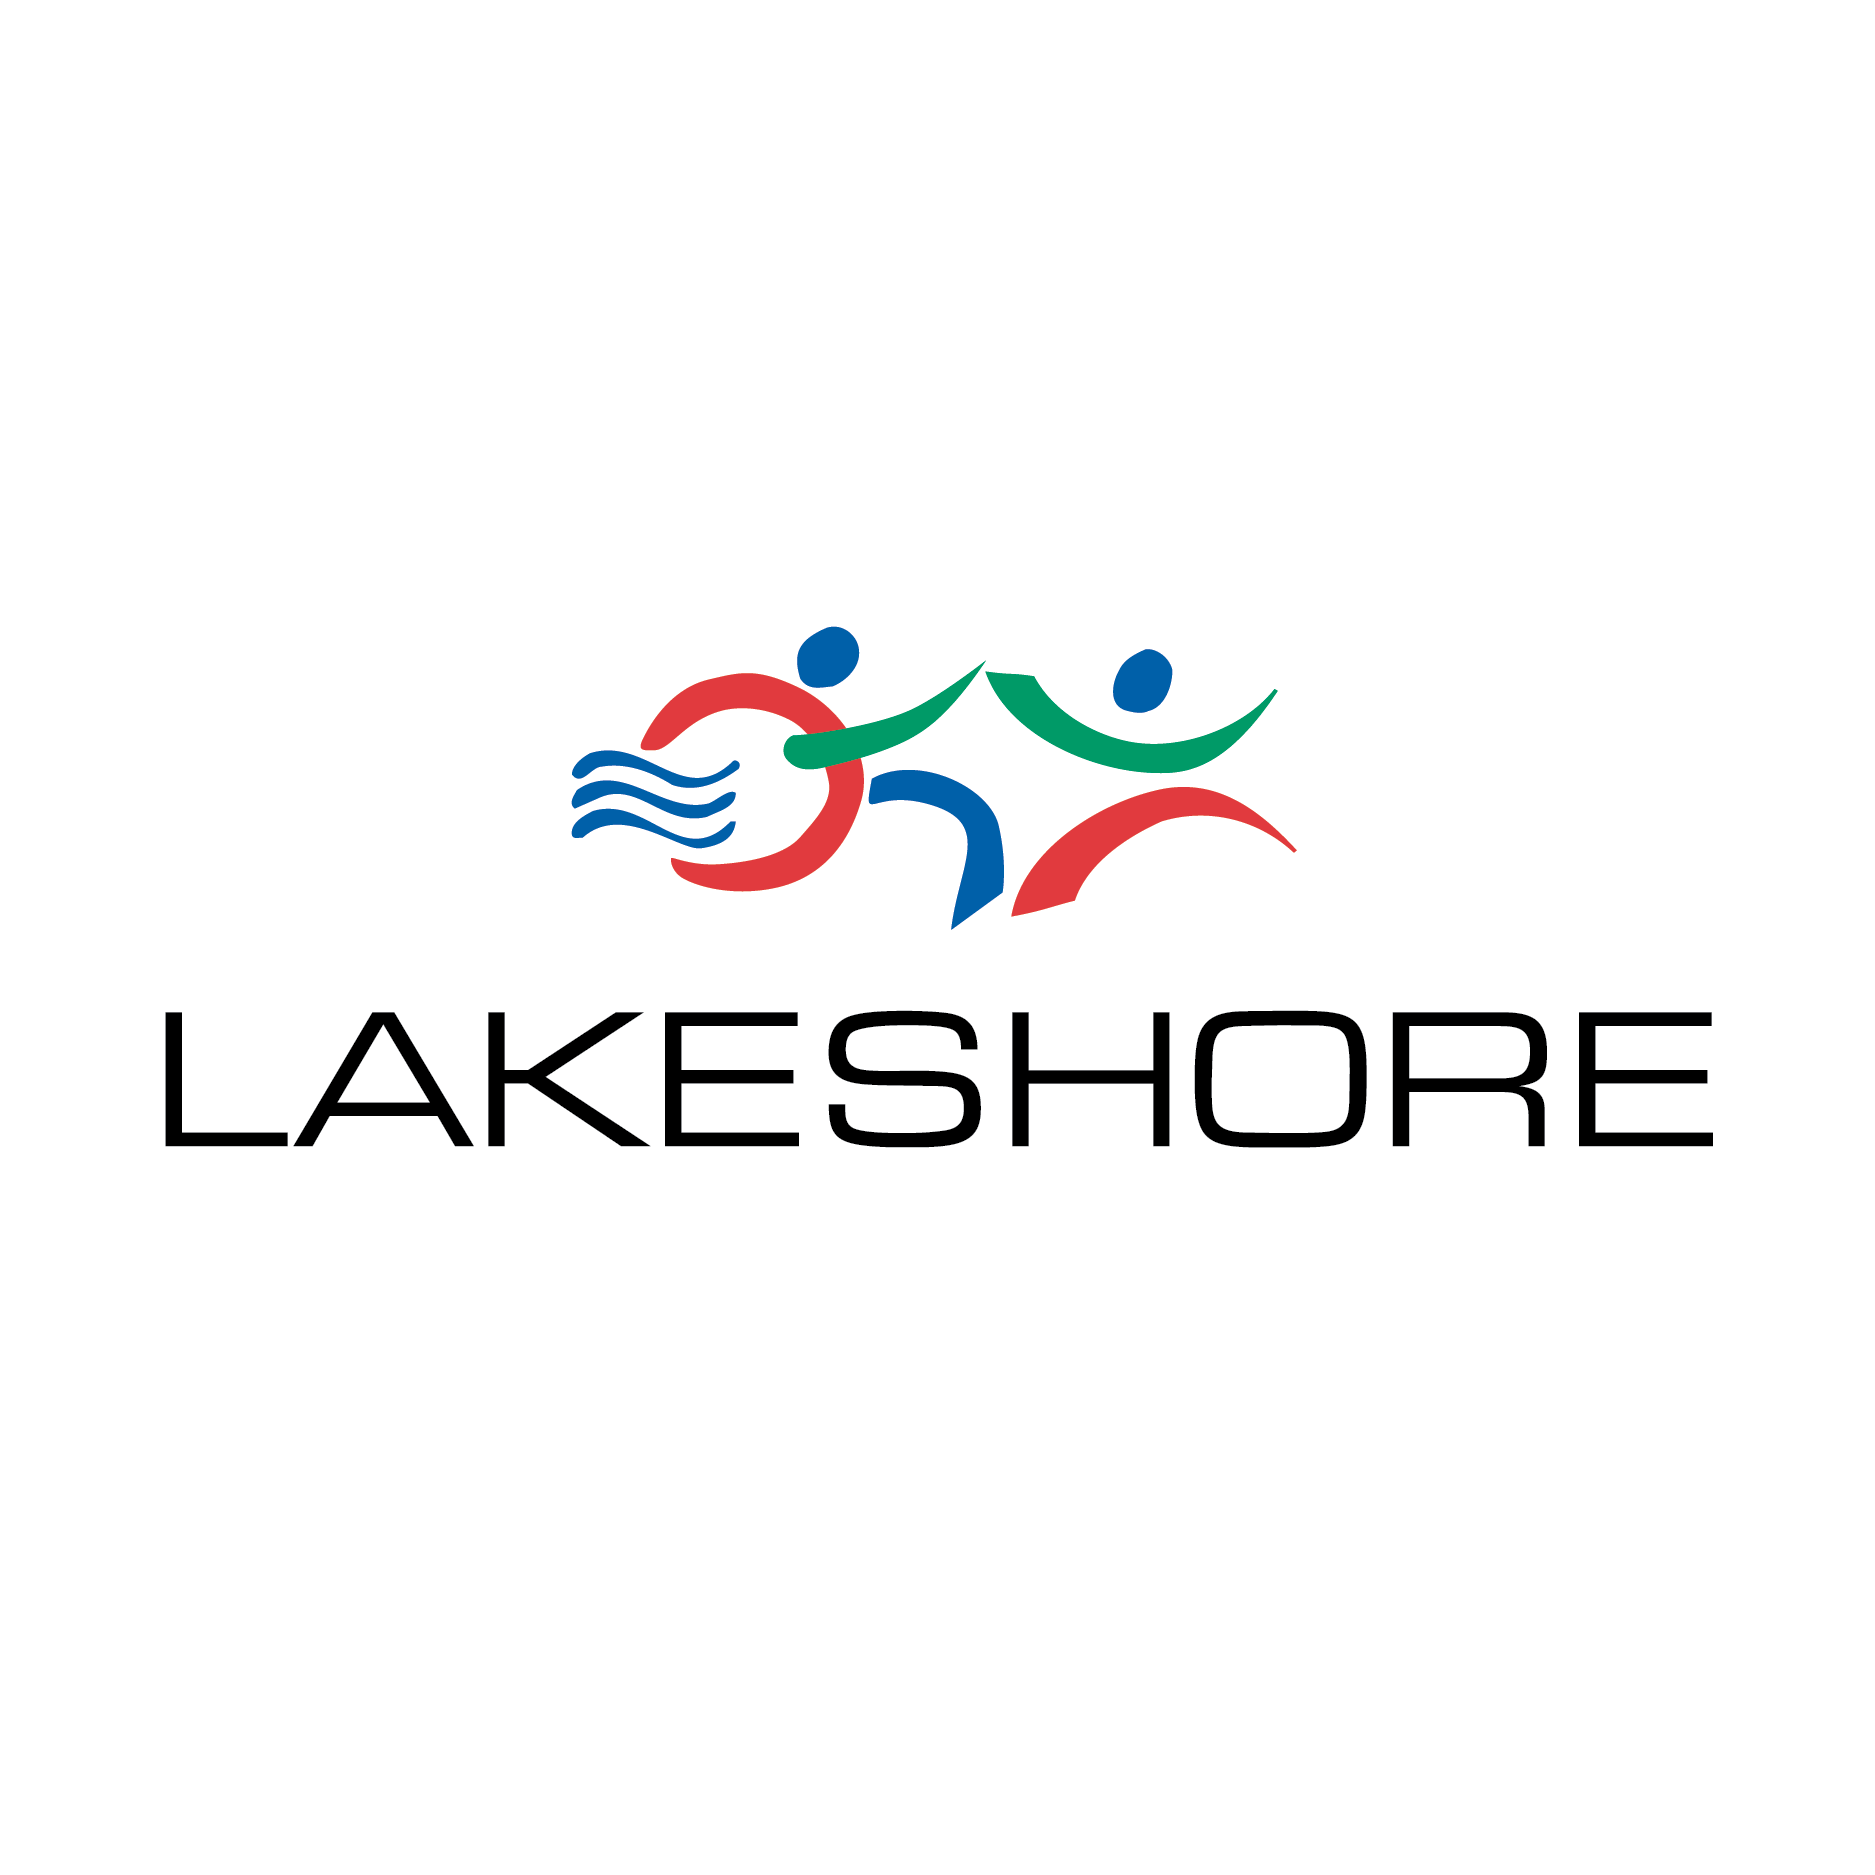 Lakeshore Foundation